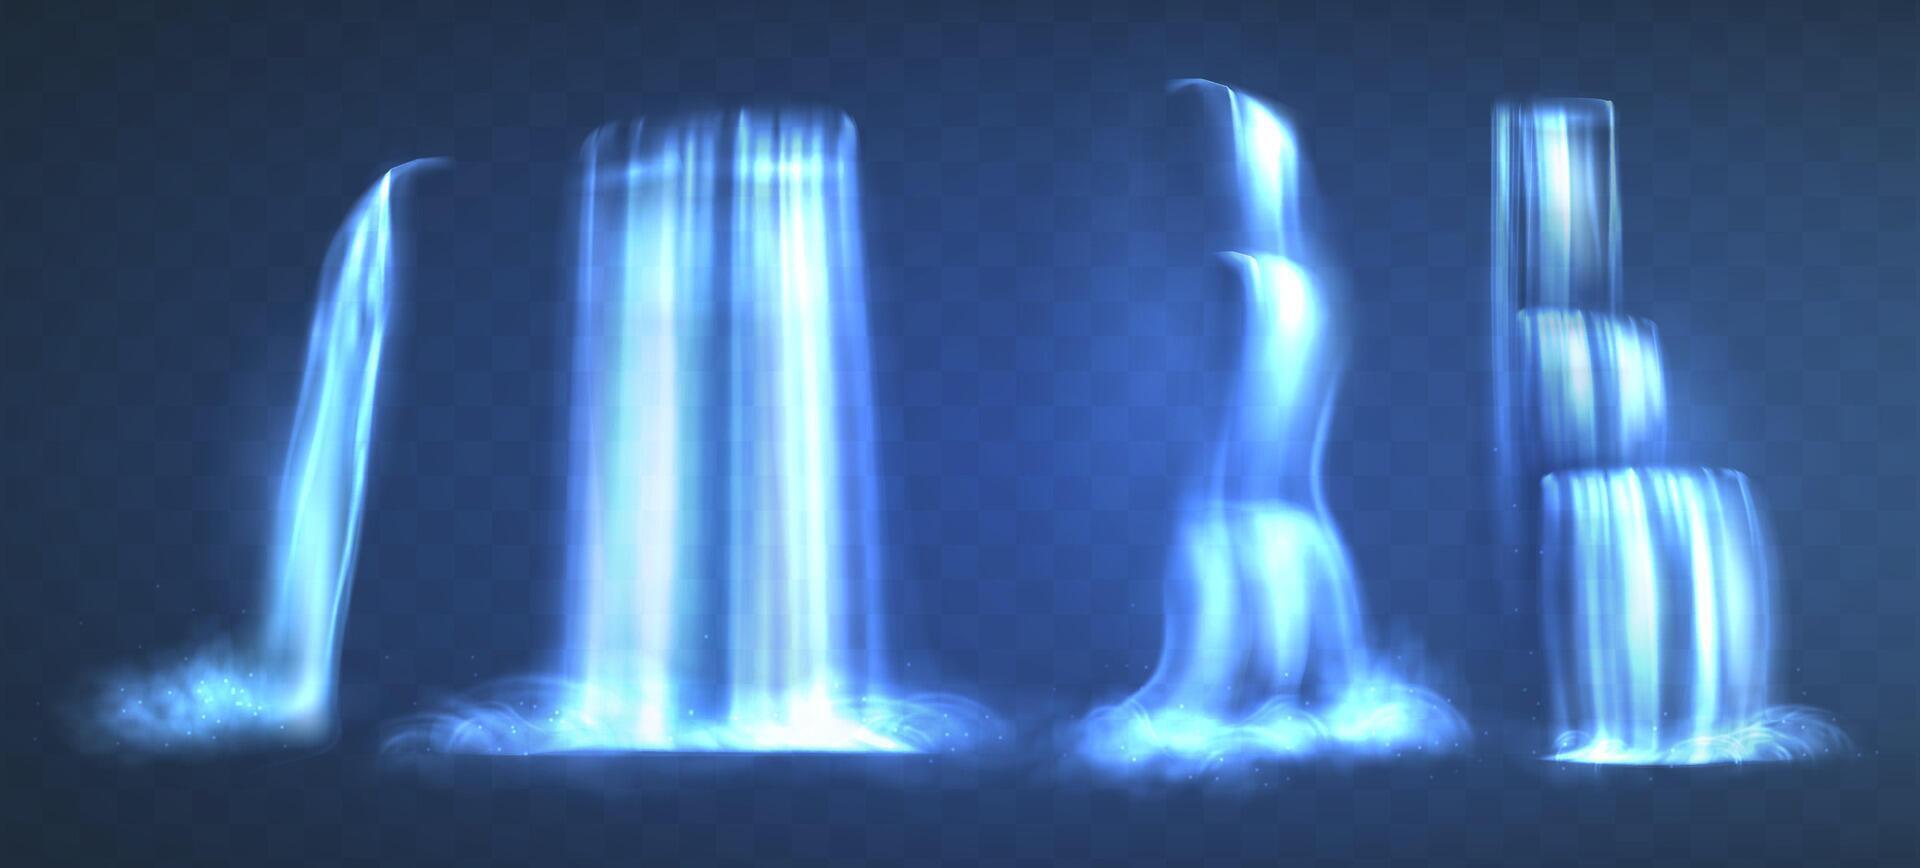 realistisk uppsättning av vattenfall isolerat på blå bakgrund. vatten falla flytande strömmar faller från bergen med kaskad, stänk och droppar, dimma eller dimma. snabb strömma av ren aqua. vektor